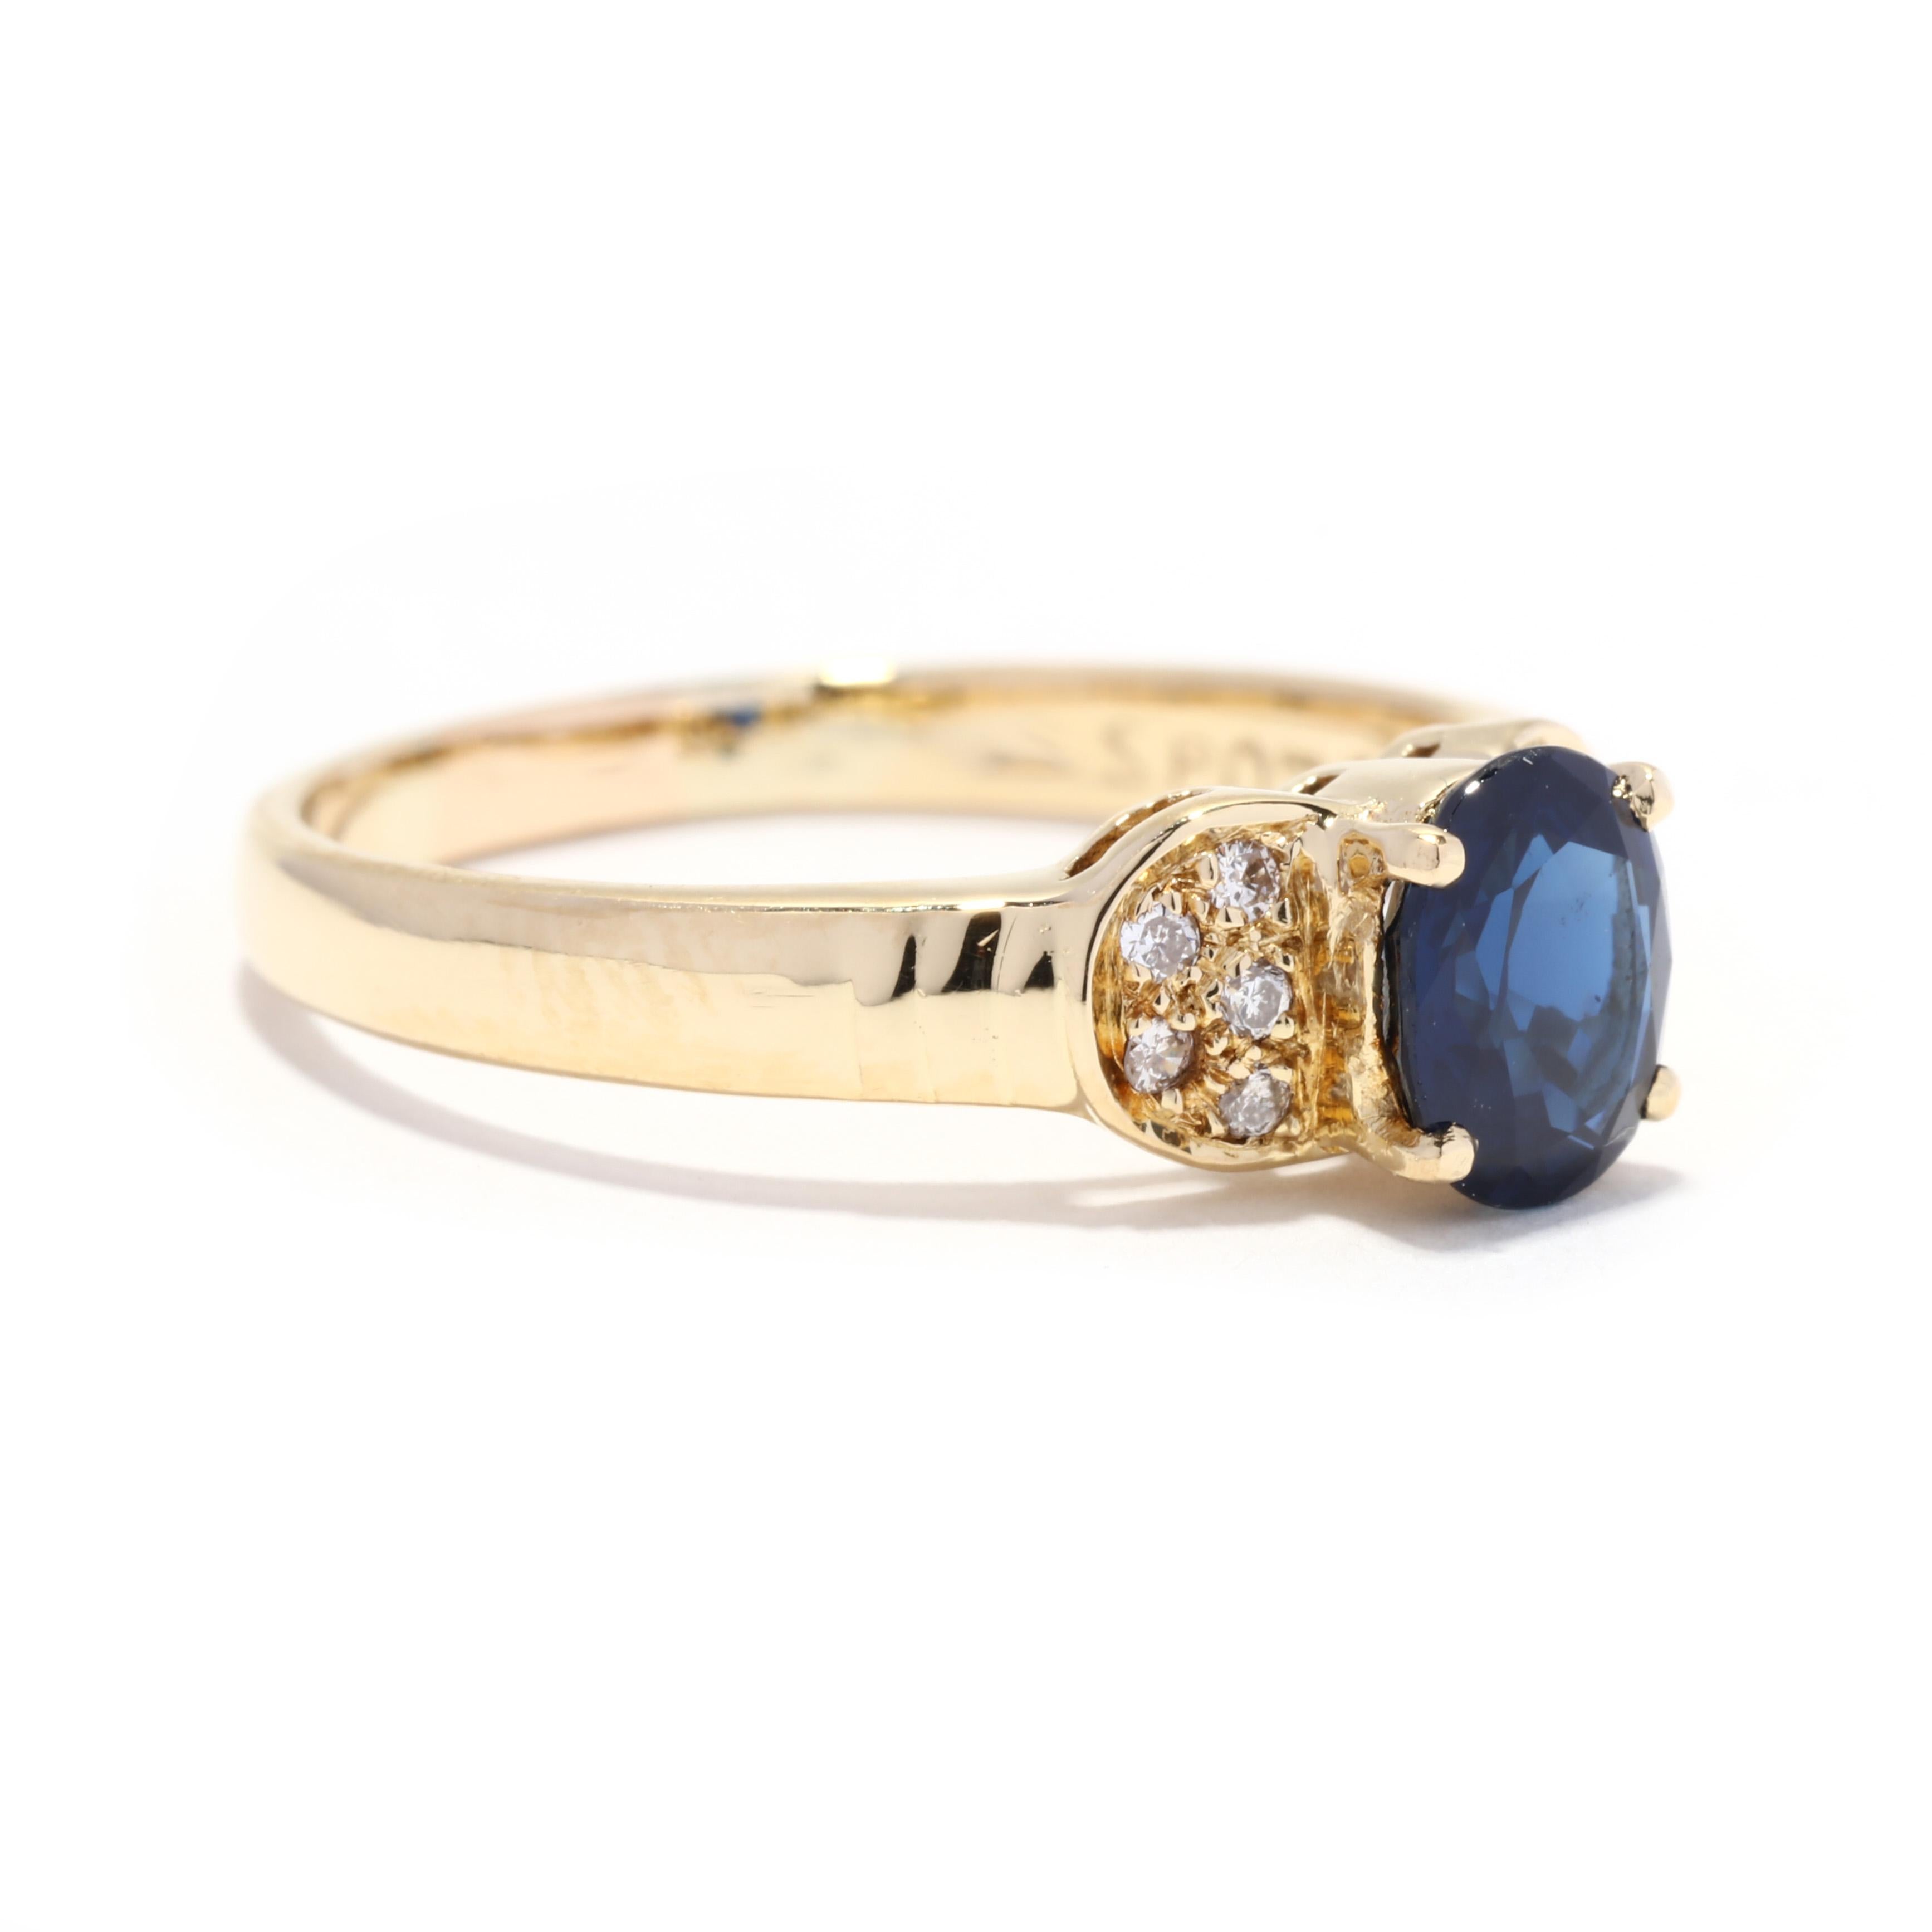 Ein Vintage-Ring aus 18 Karat Gelbgold mit einem Saphir und einem Diamanten. Dieser Verlobungsring besteht aus einem ovalen, natürlichen Saphir mit einem Gewicht von ca. 0,75 Karat und einer Gruppe von Diamanten auf beiden Seiten und einem sich